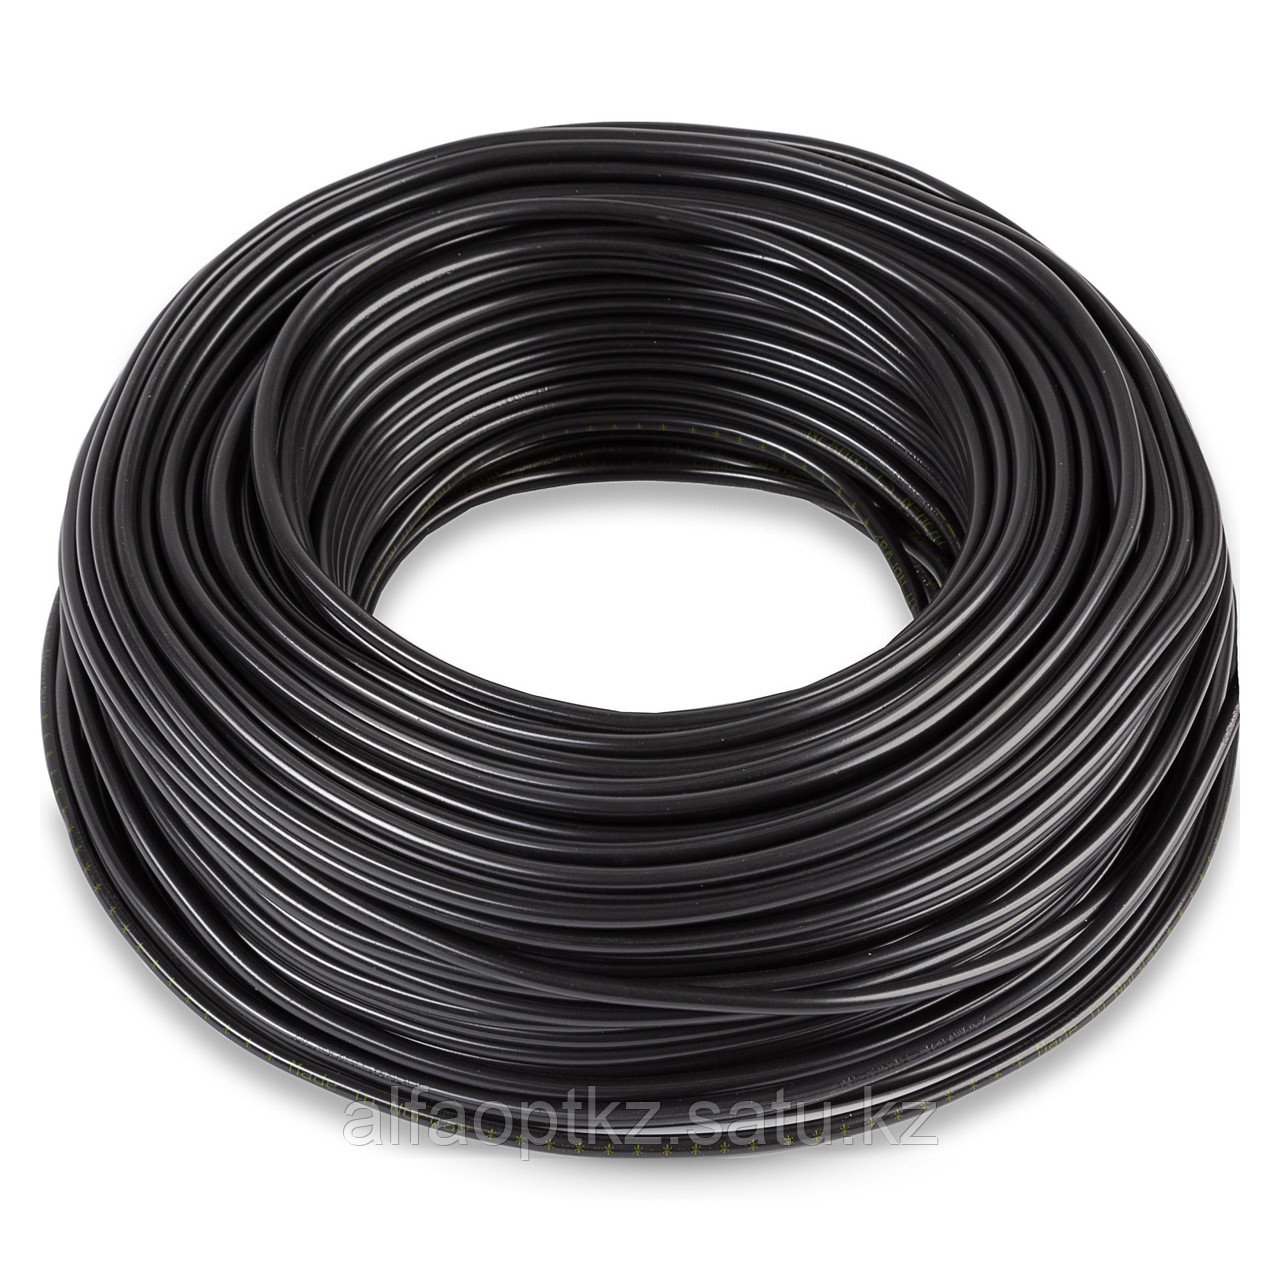 Одножильный отрезной нагревательный кабель TXLP 0,49 OHM/M (BLACK)